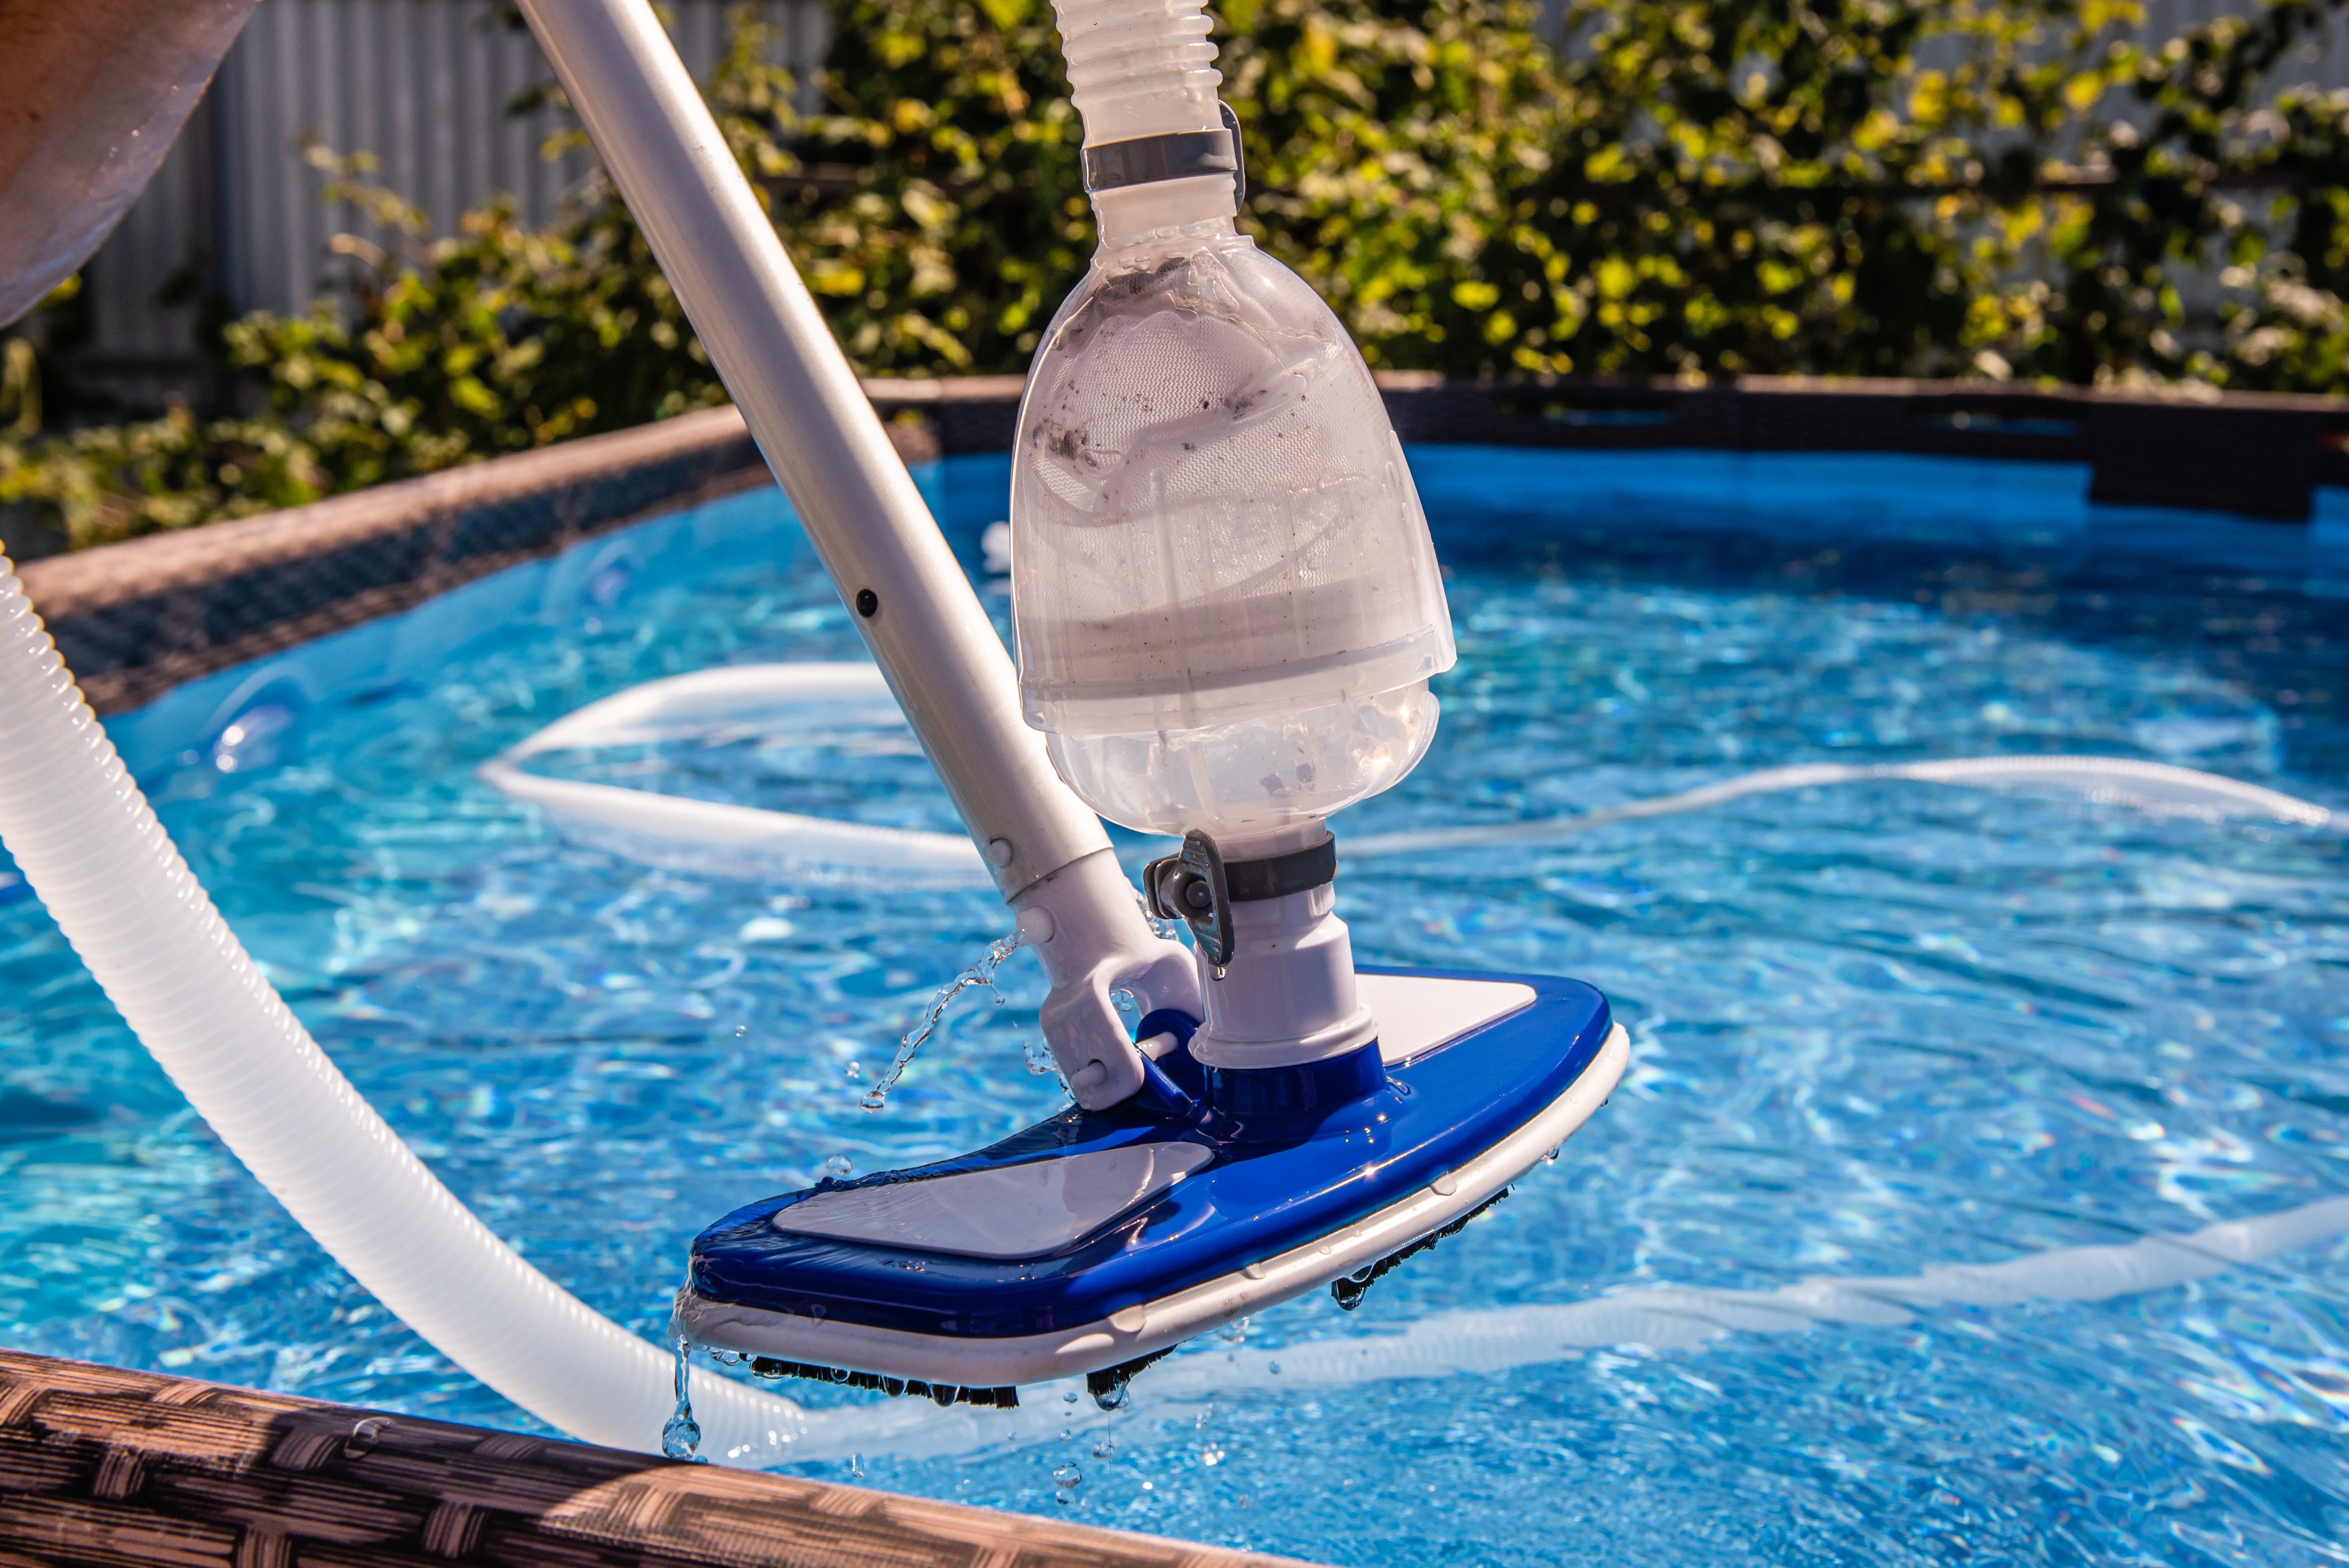 Le robot nettoyeur de piscine TELSA 90 est en promotion sur Amazon